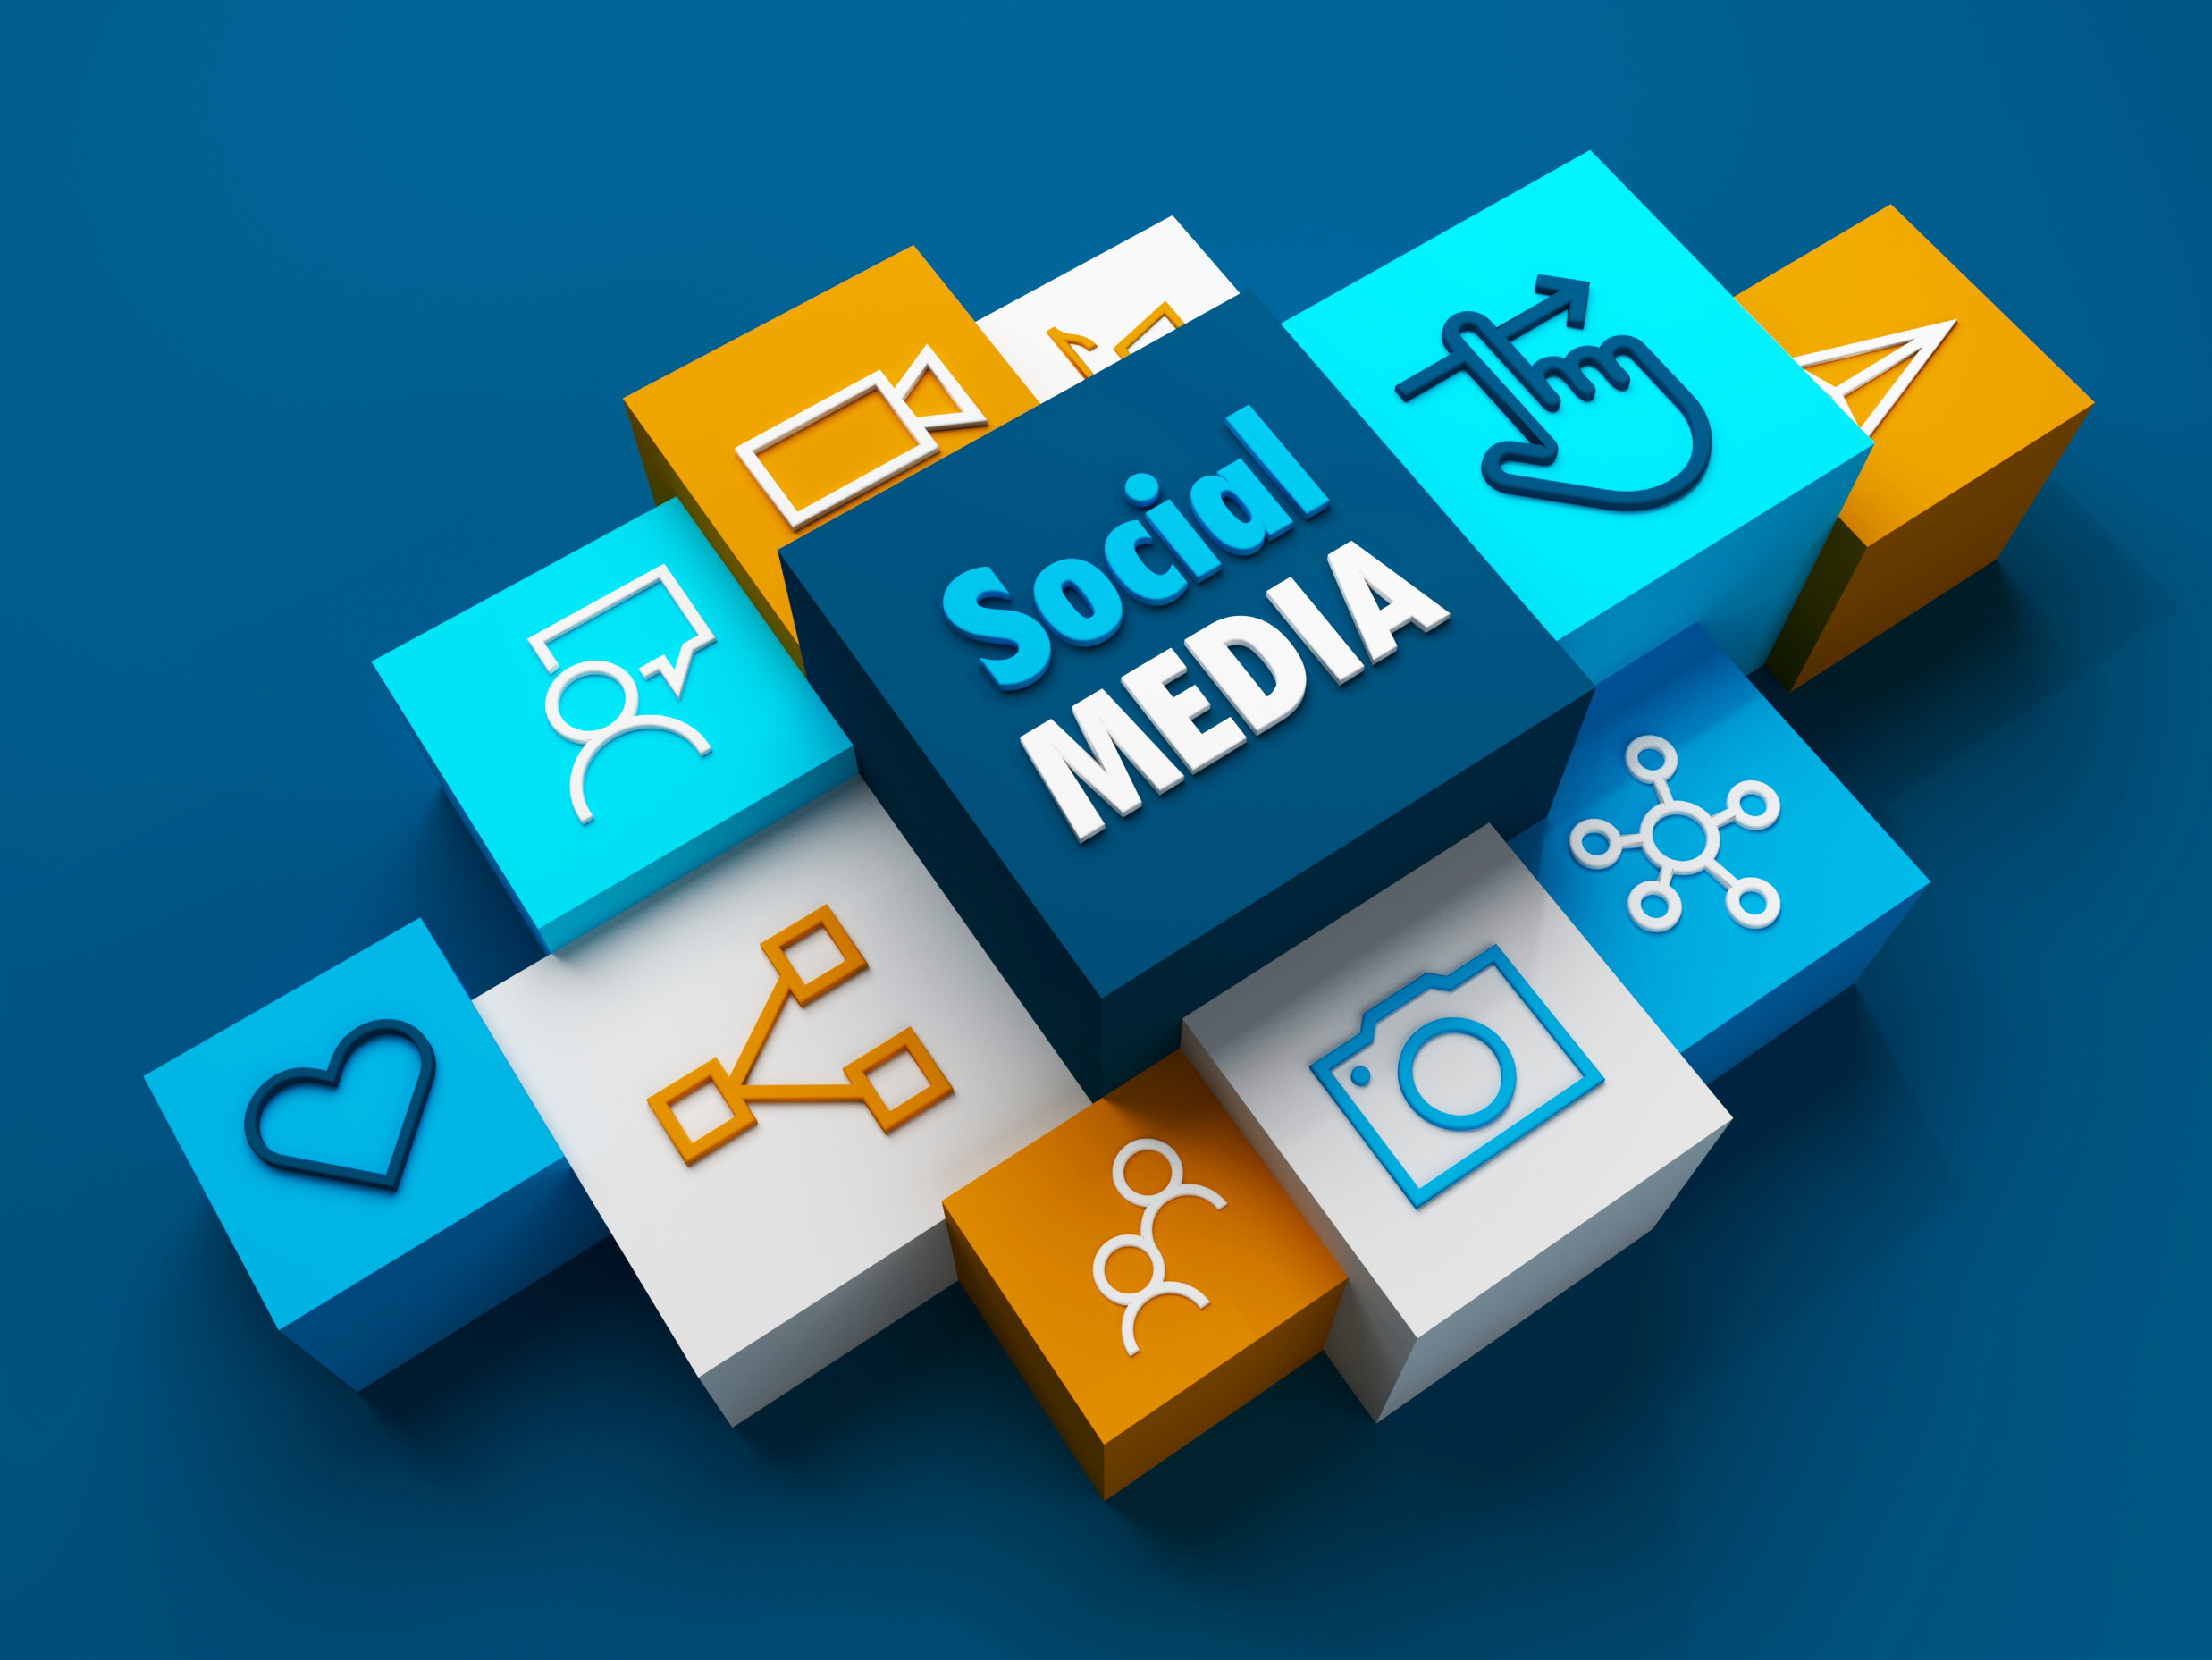 Social Media Marketing training